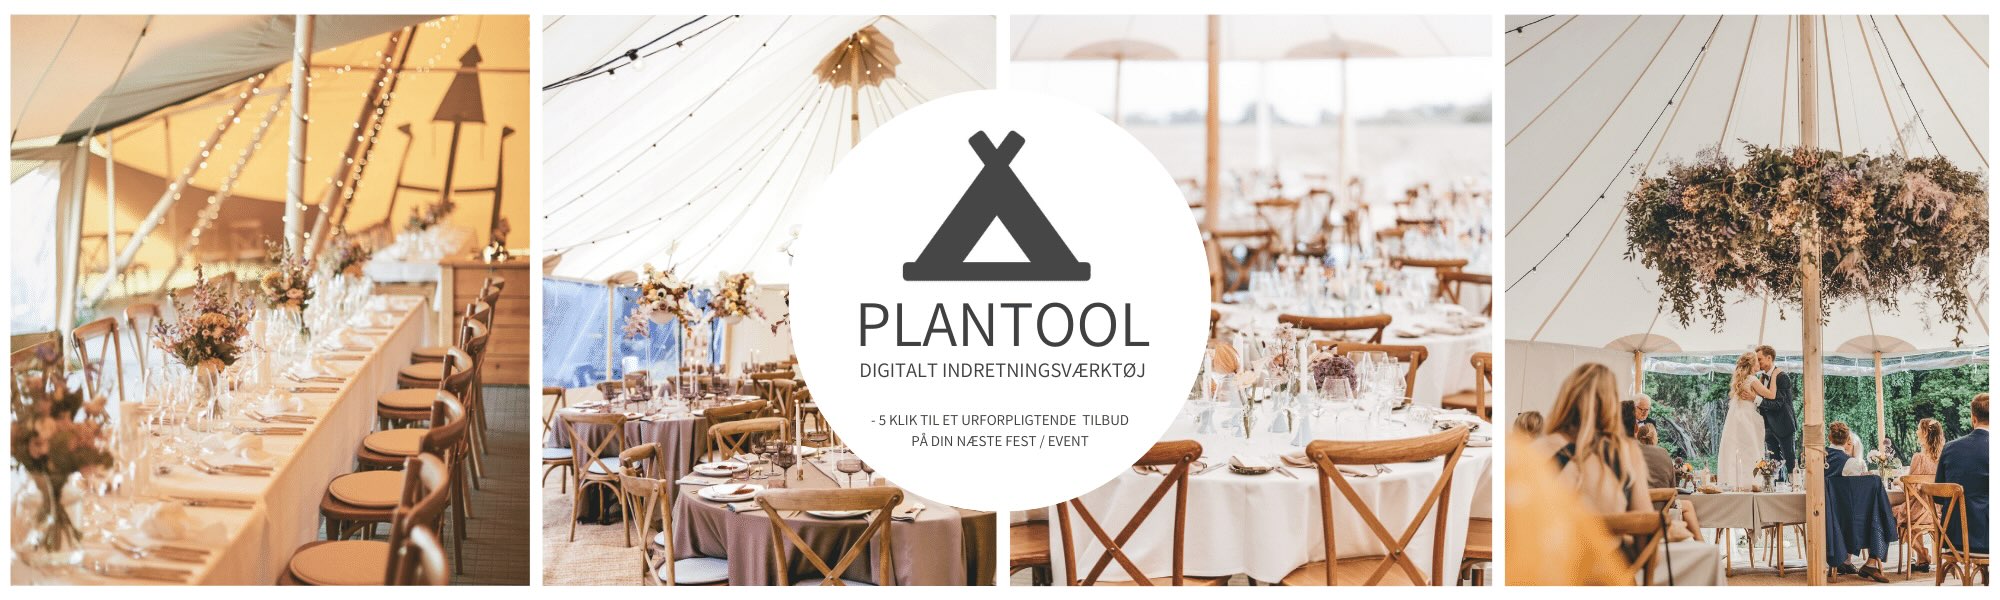 plantool-design-din-fest-i-telt